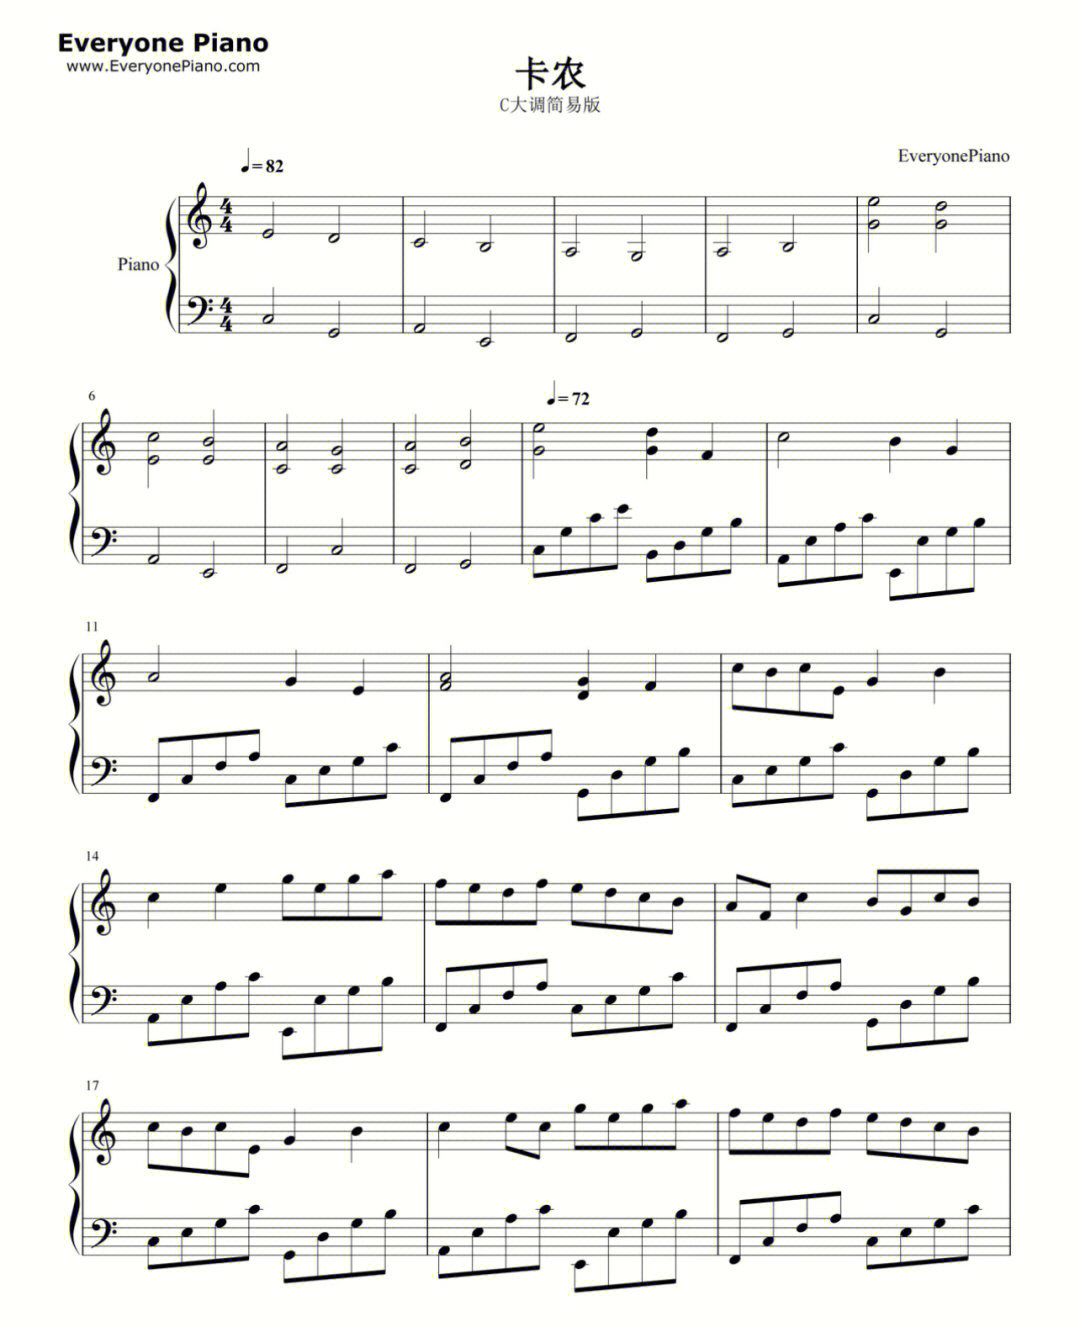 卡农小提琴曲谱完整版图片